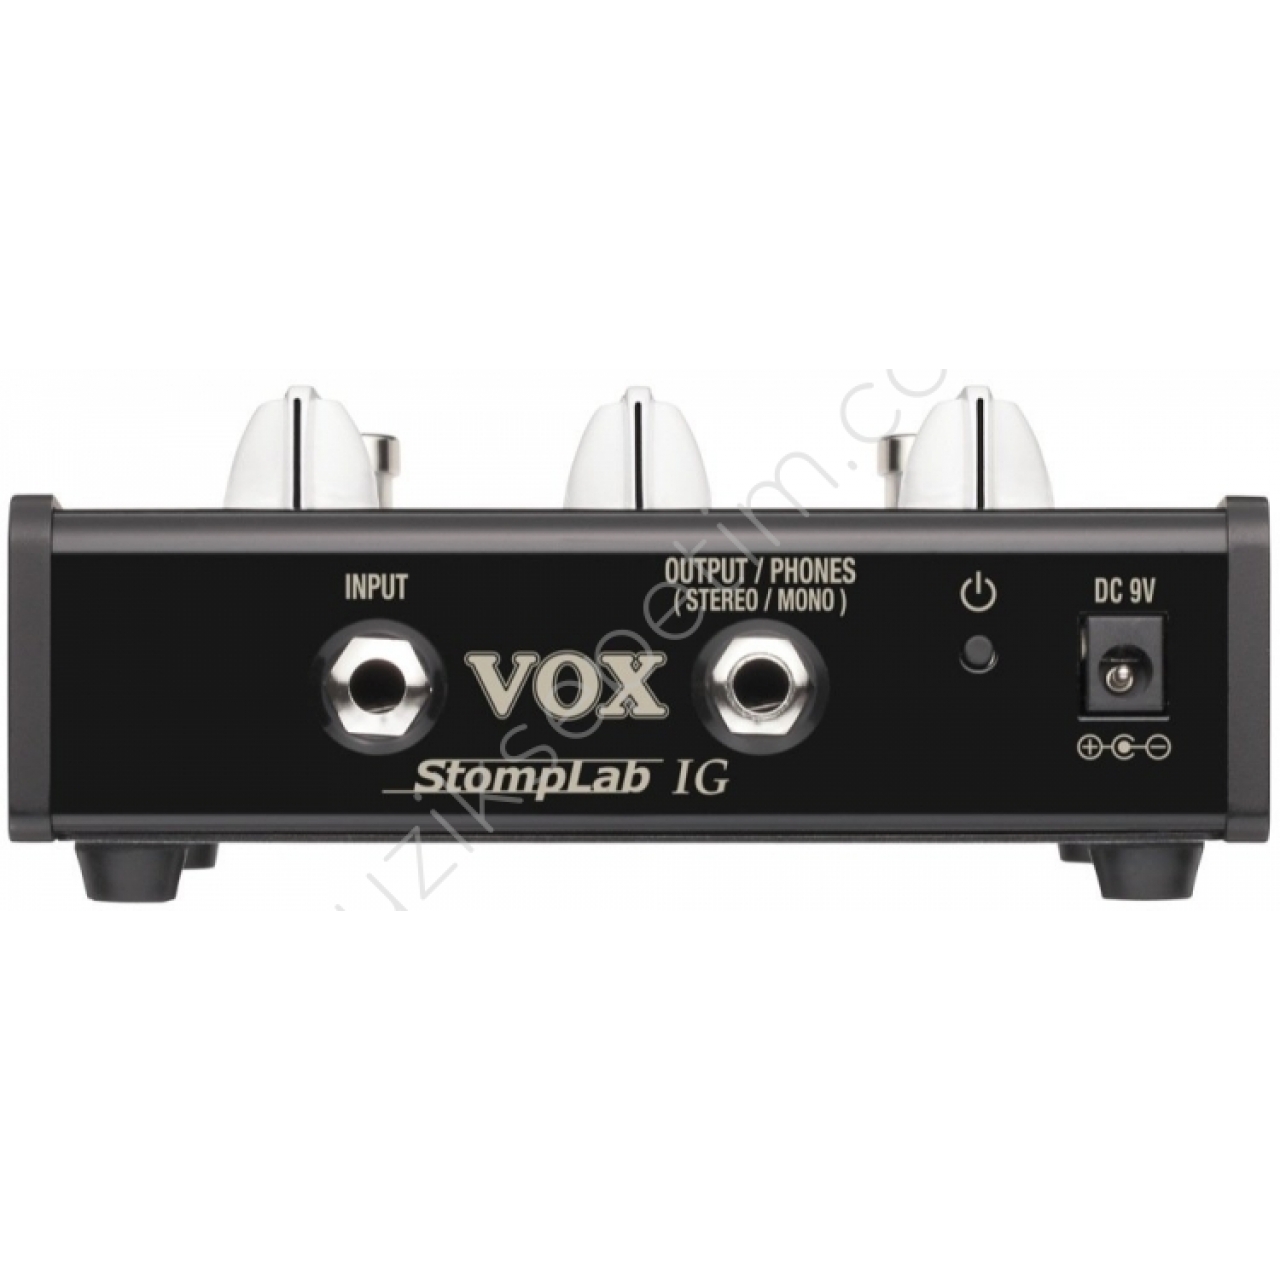 Vox StompLab 1G Gitar Prosesör